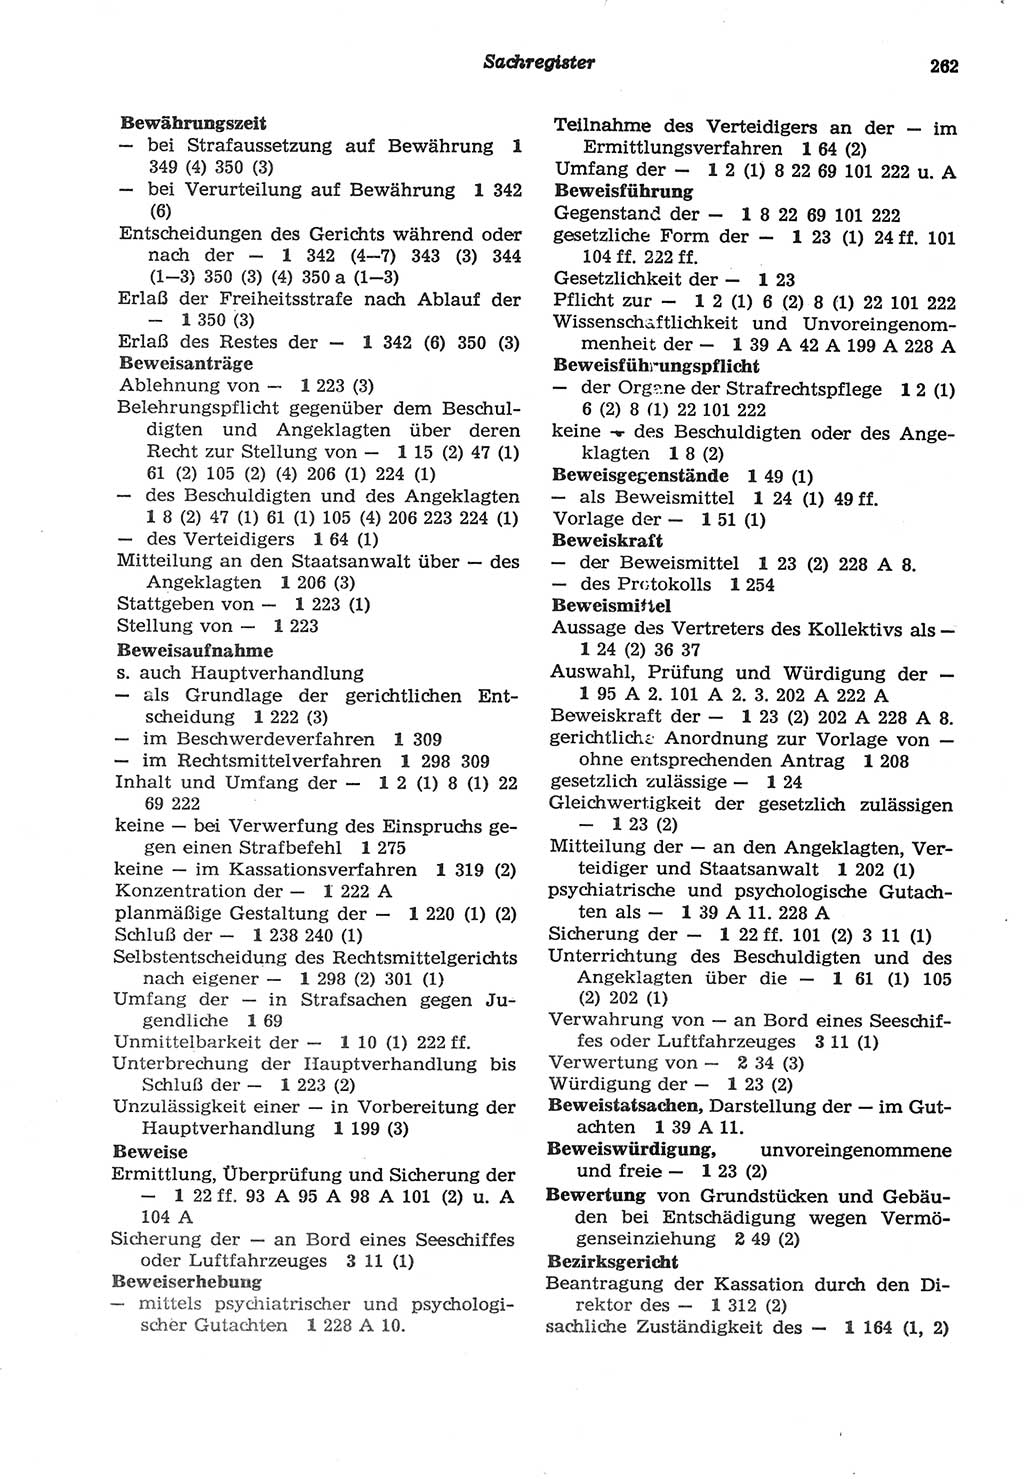 Strafprozeßordnung (StPO) der Deutschen Demokratischen Republik (DDR) sowie angrenzende Gesetze und Bestimmungen 1977, Seite 262 (StPO DDR Ges. Best. 1977, S. 262)